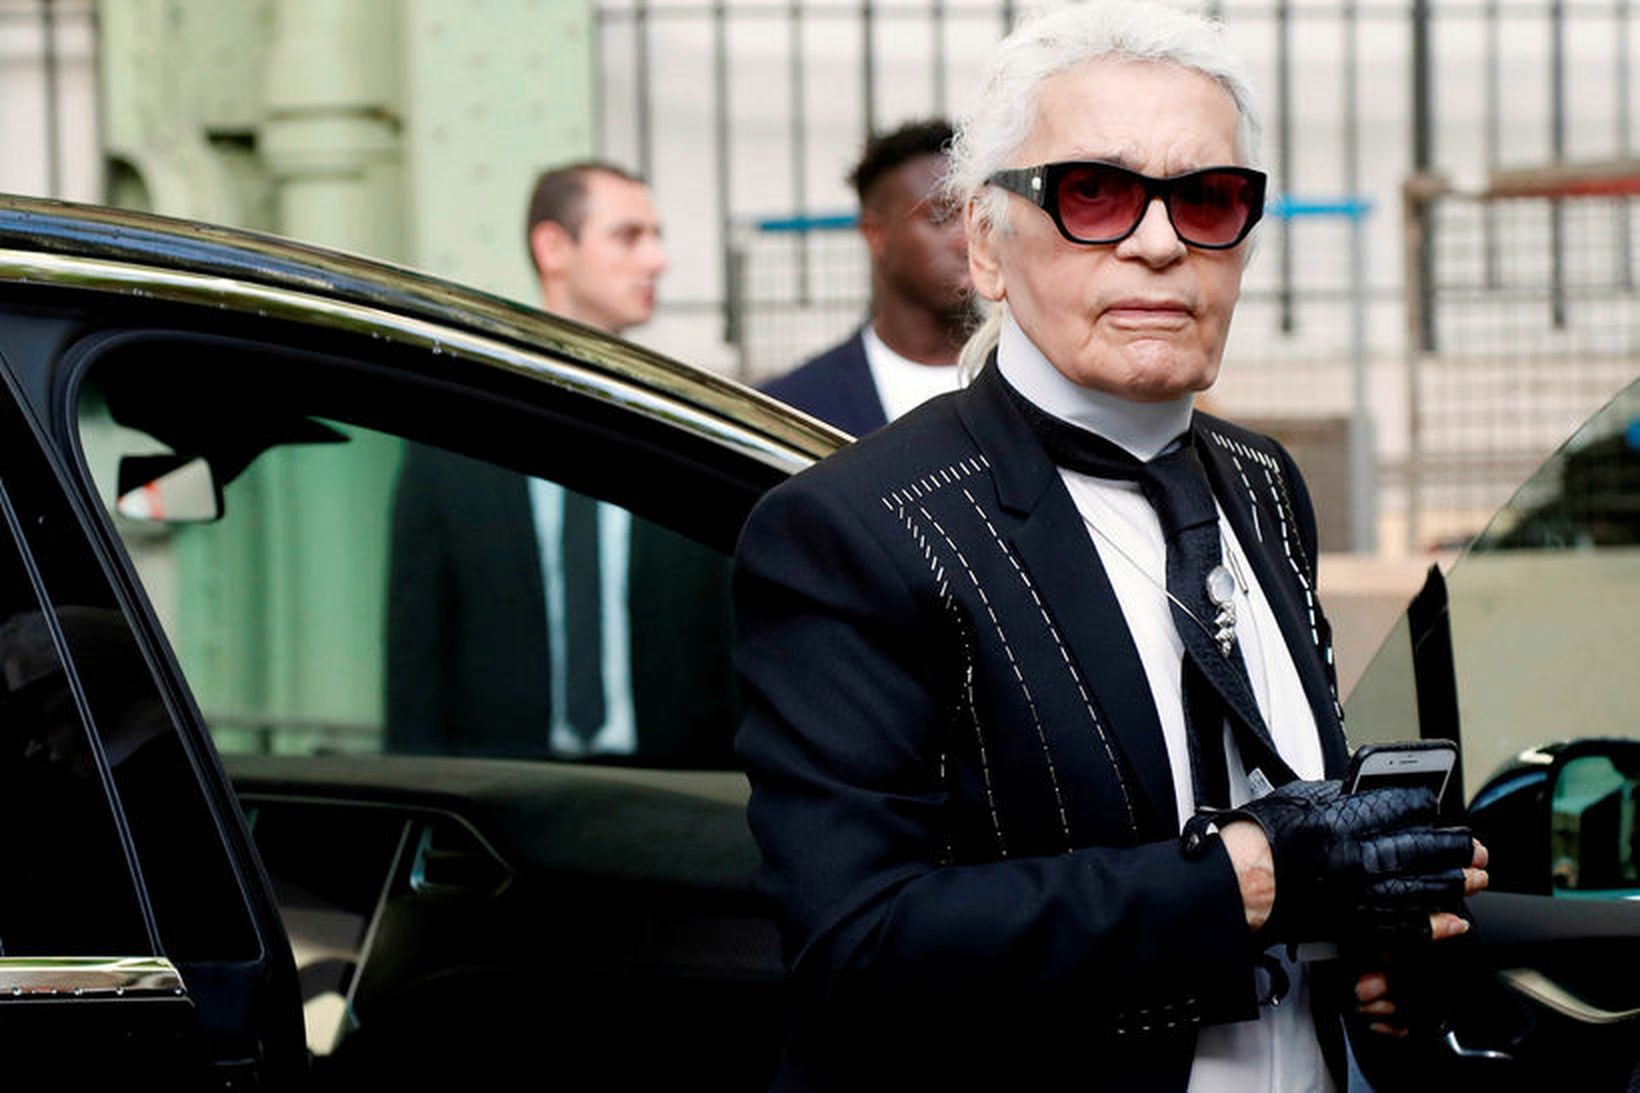 Karl Lagerfeld tískuhönnuður hjá Chanel.